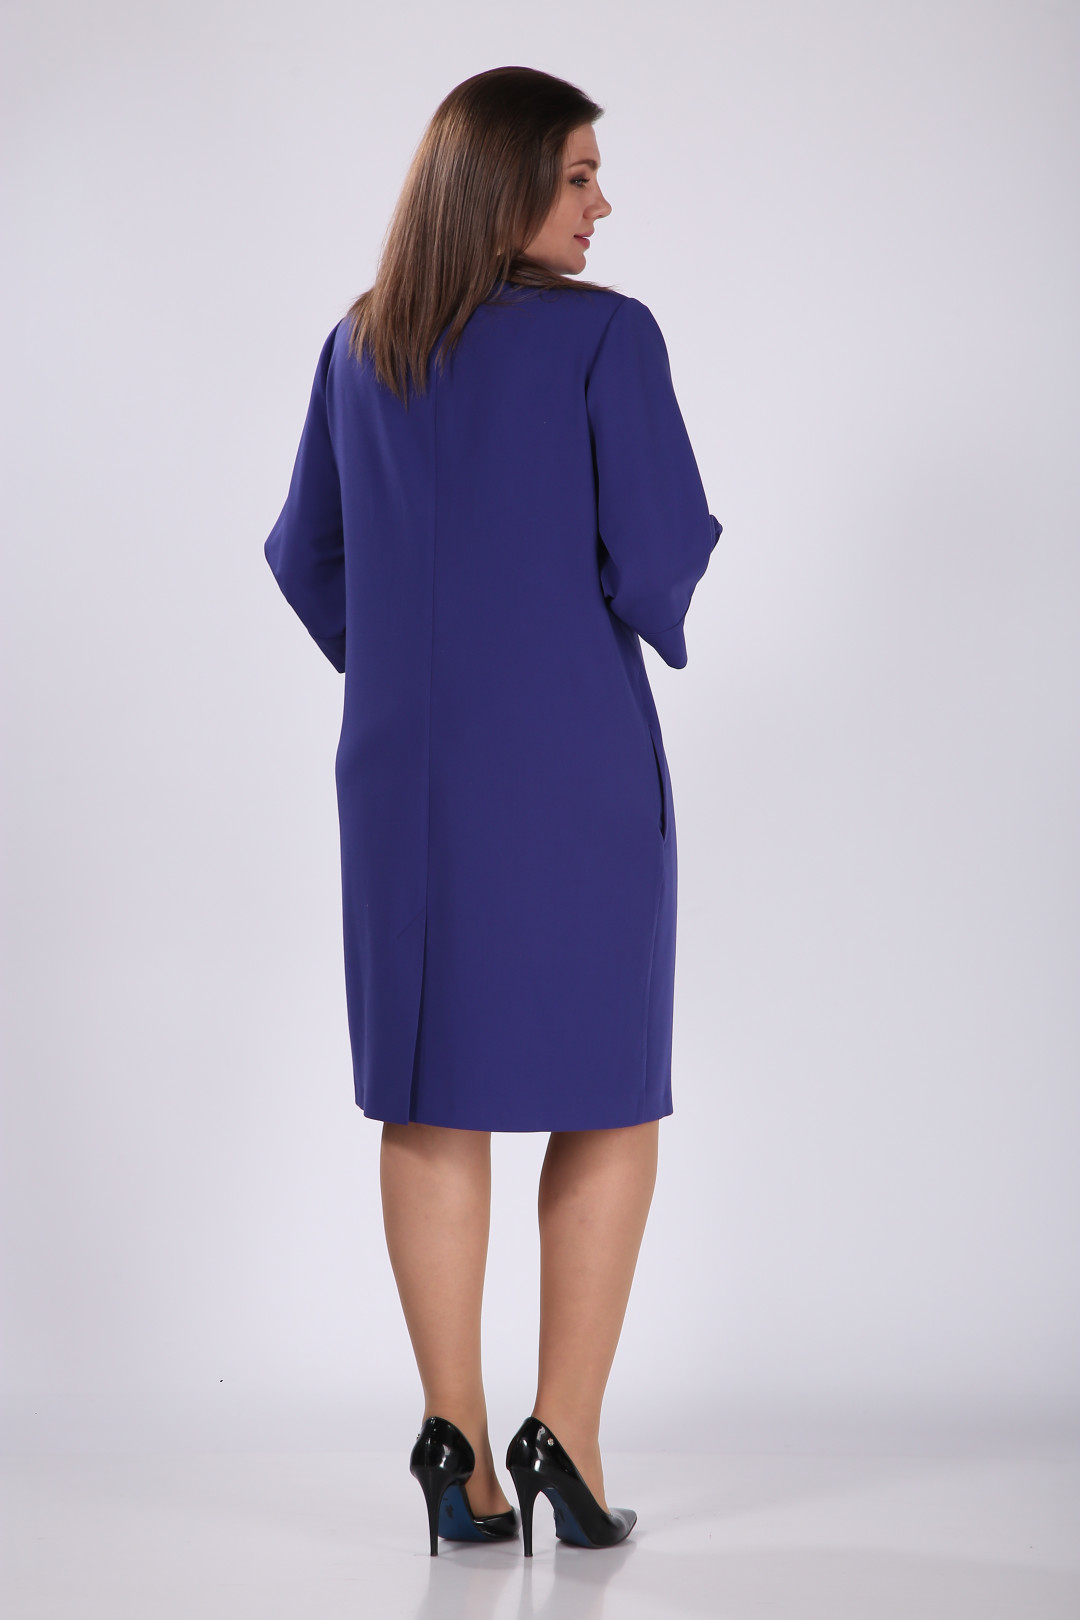 Платье Карина Делюкс М-1069 ультрафиолет